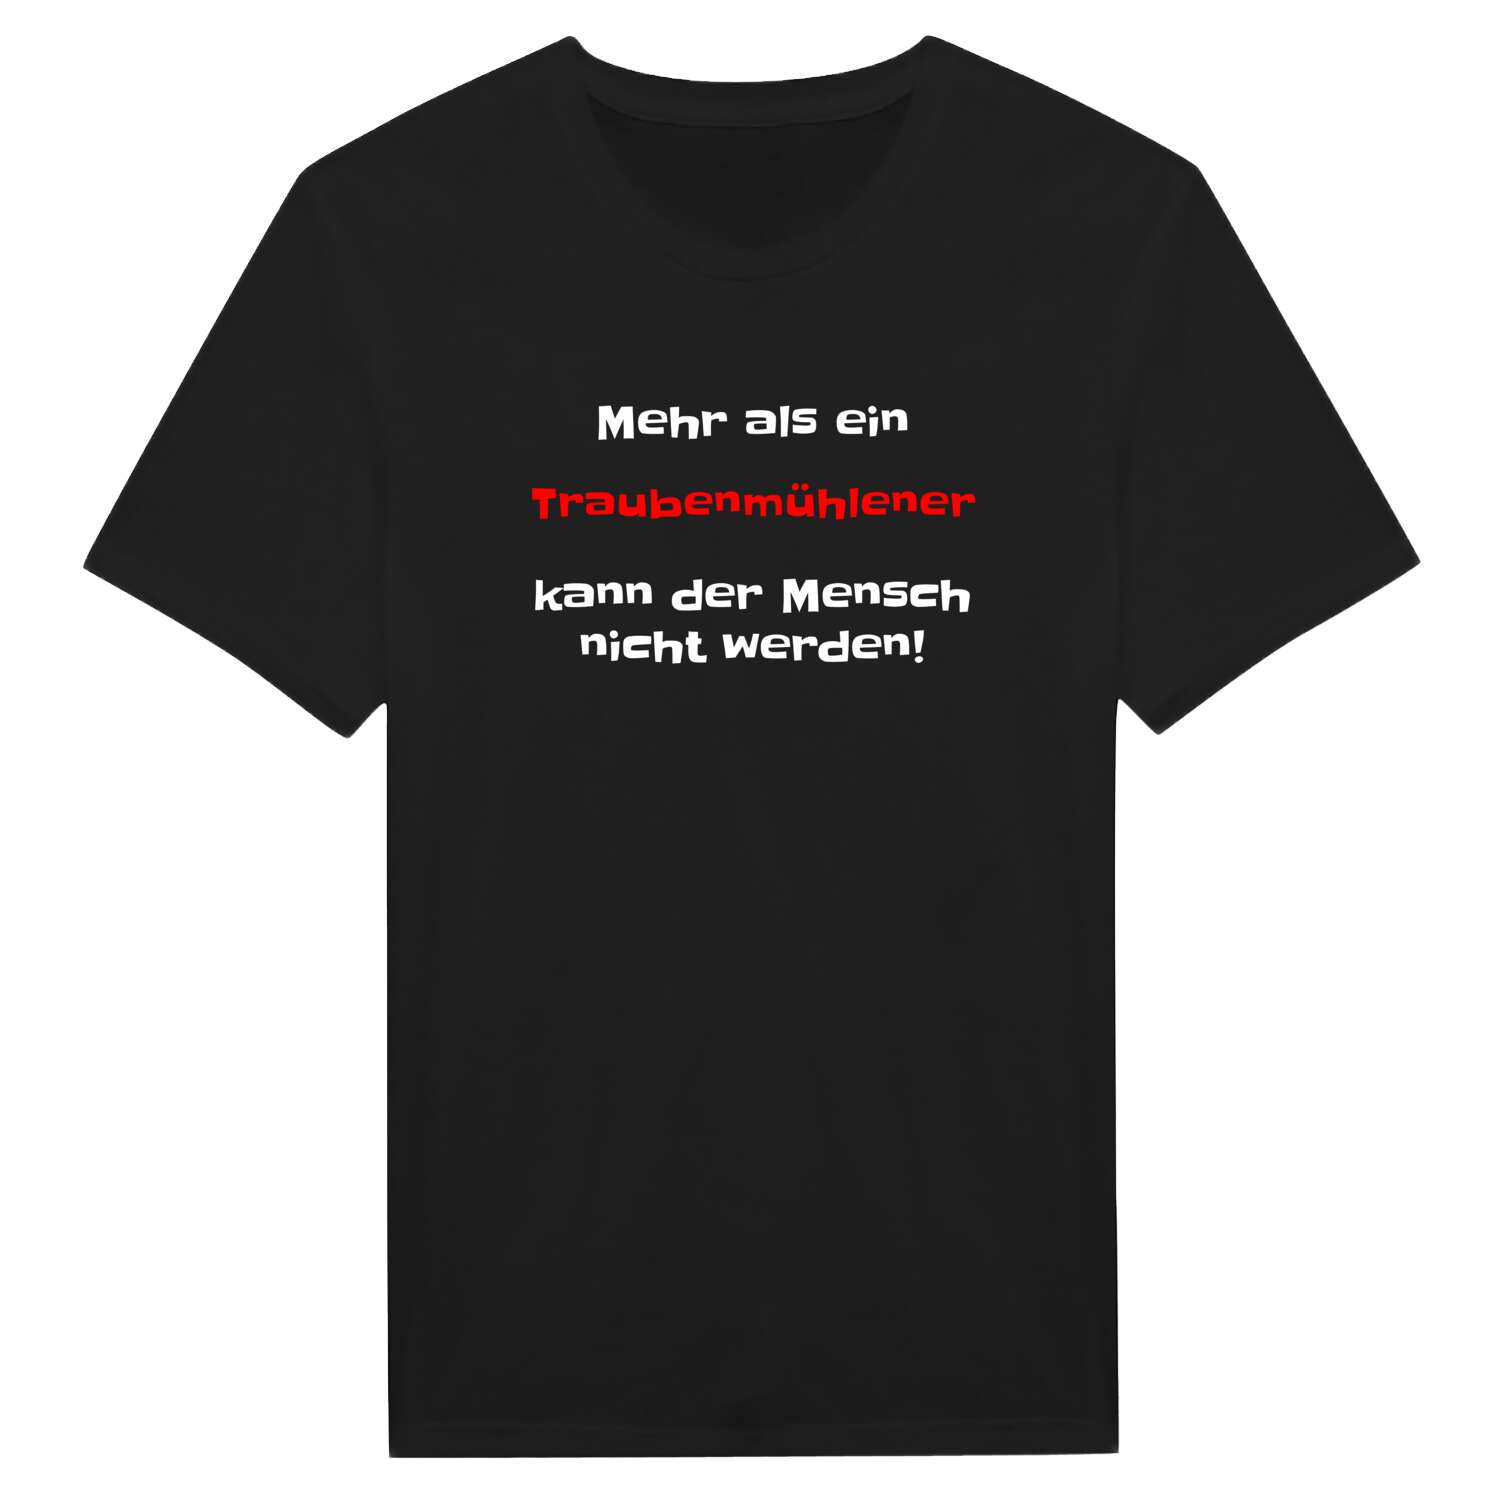 Traubenmühle T-Shirt »Mehr als ein«